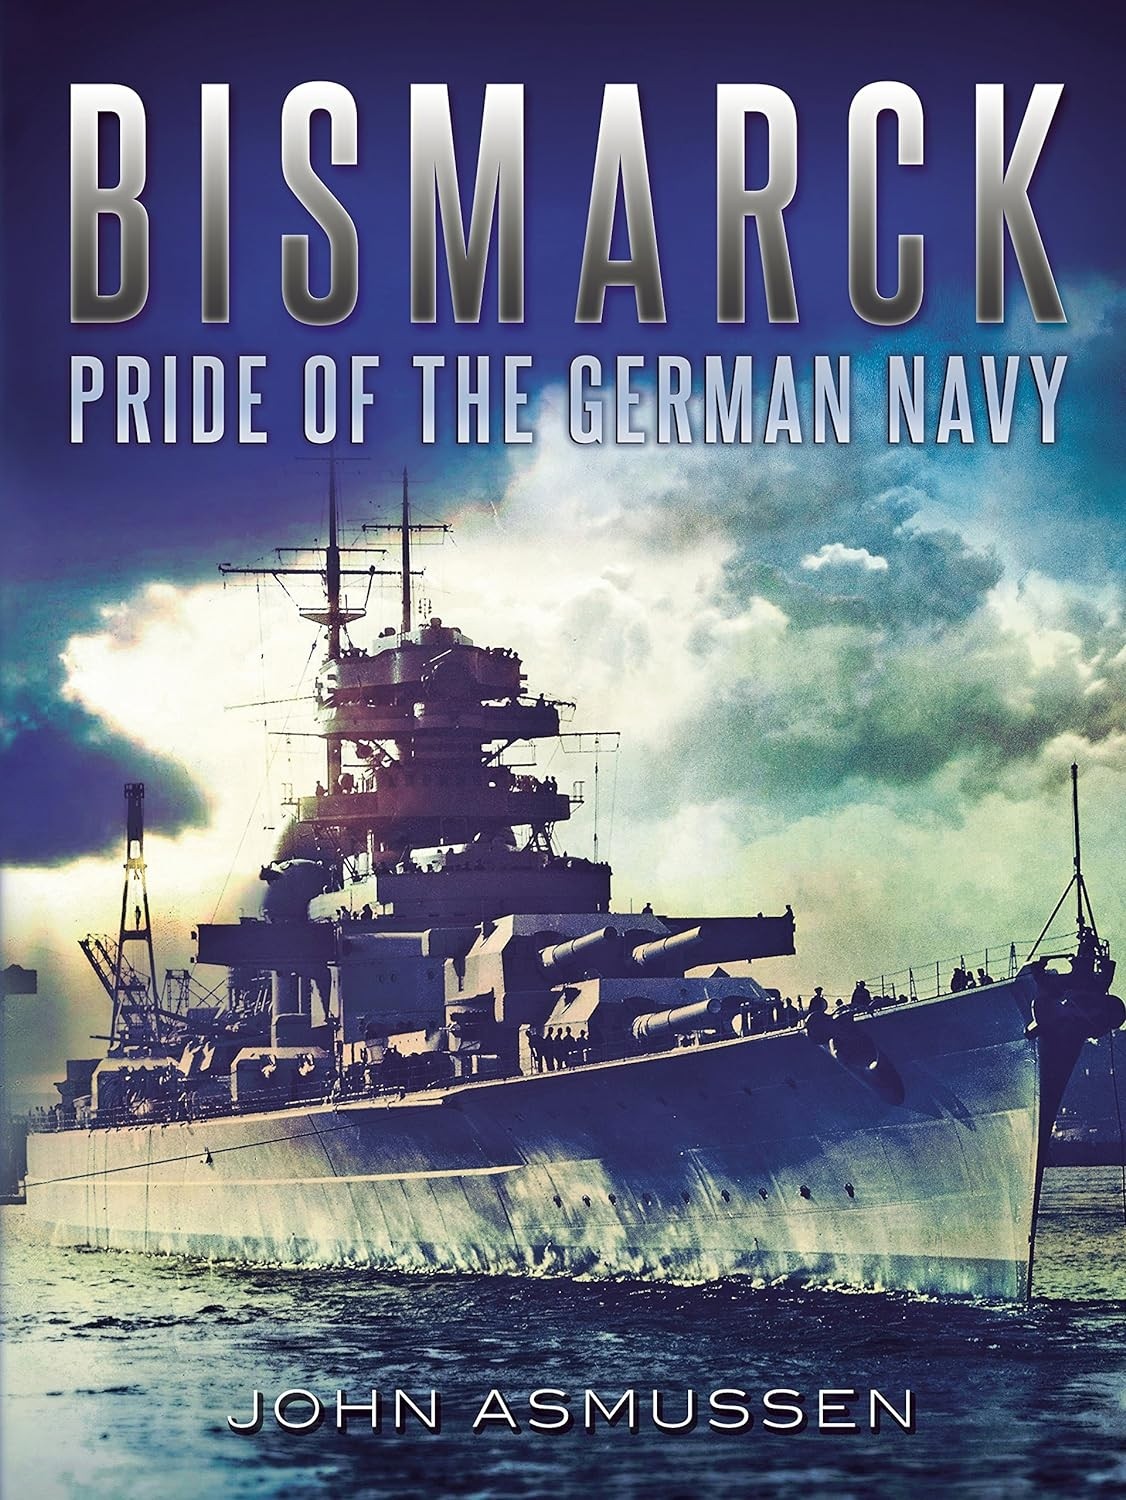 Bismarck: Pride of the German Navy